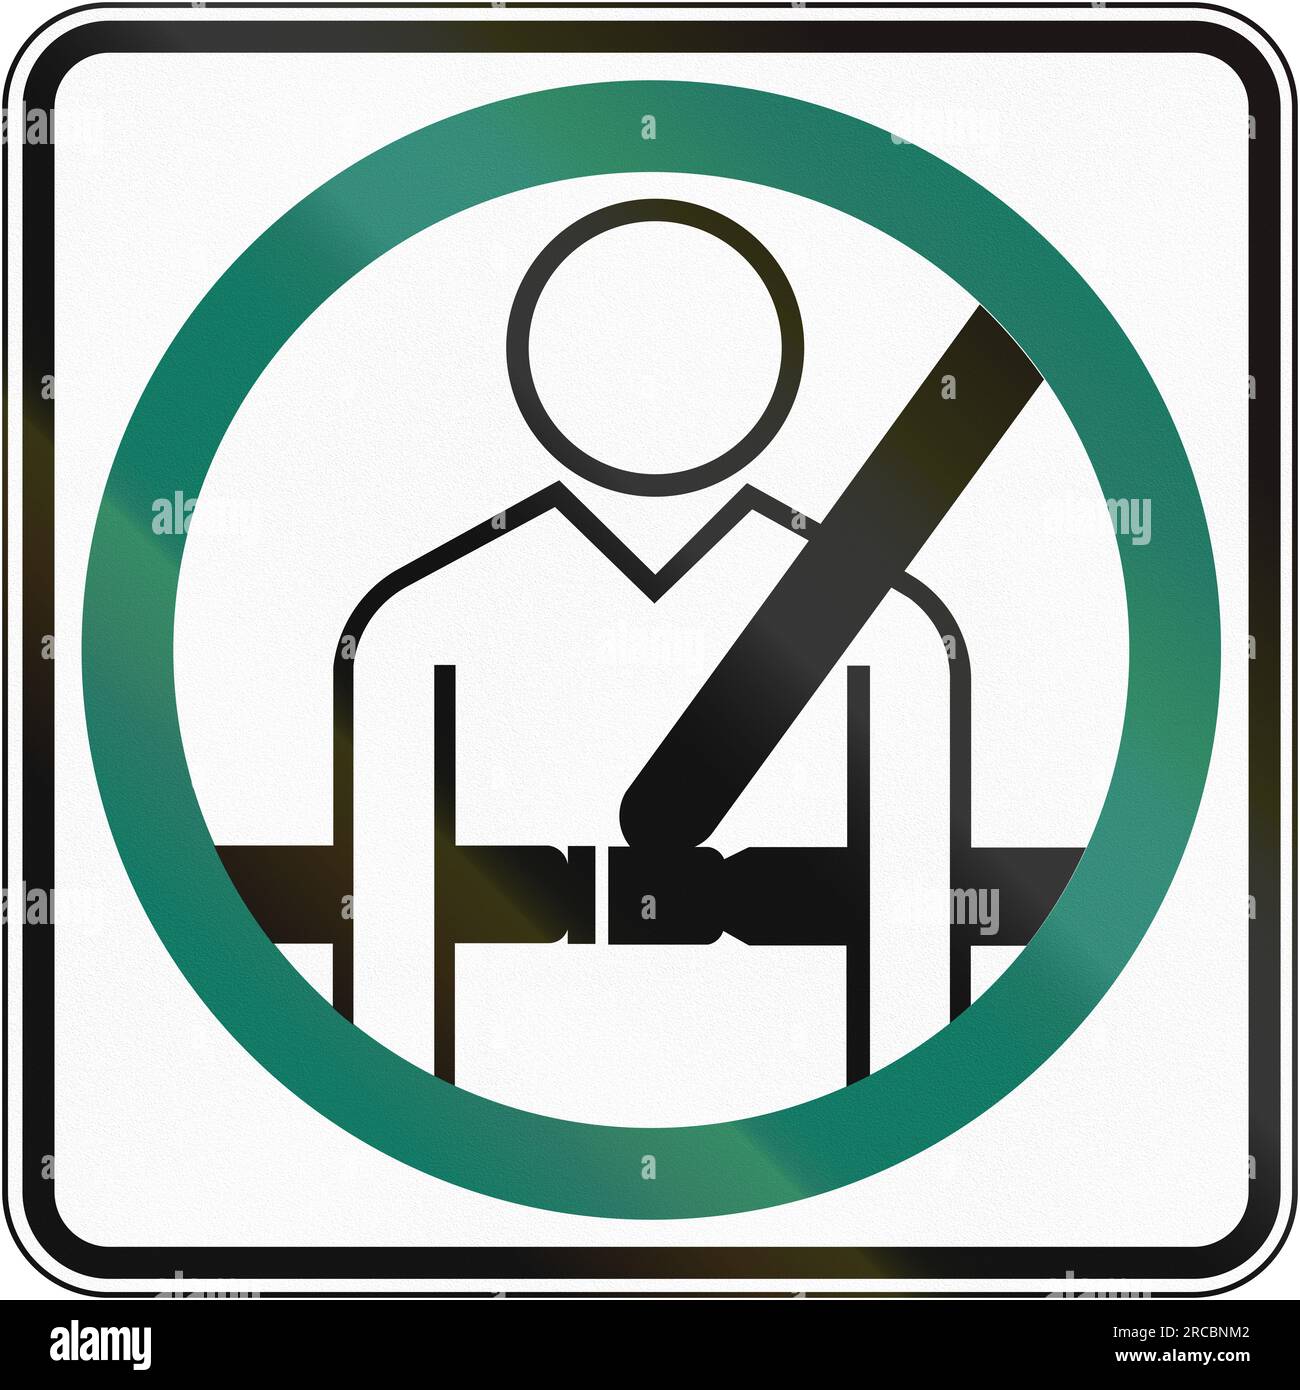 Cartello stradale canadese: Uso delle cinture di sicurezza obbligatorio. Questo segno è usato in Quebec. Foto Stock